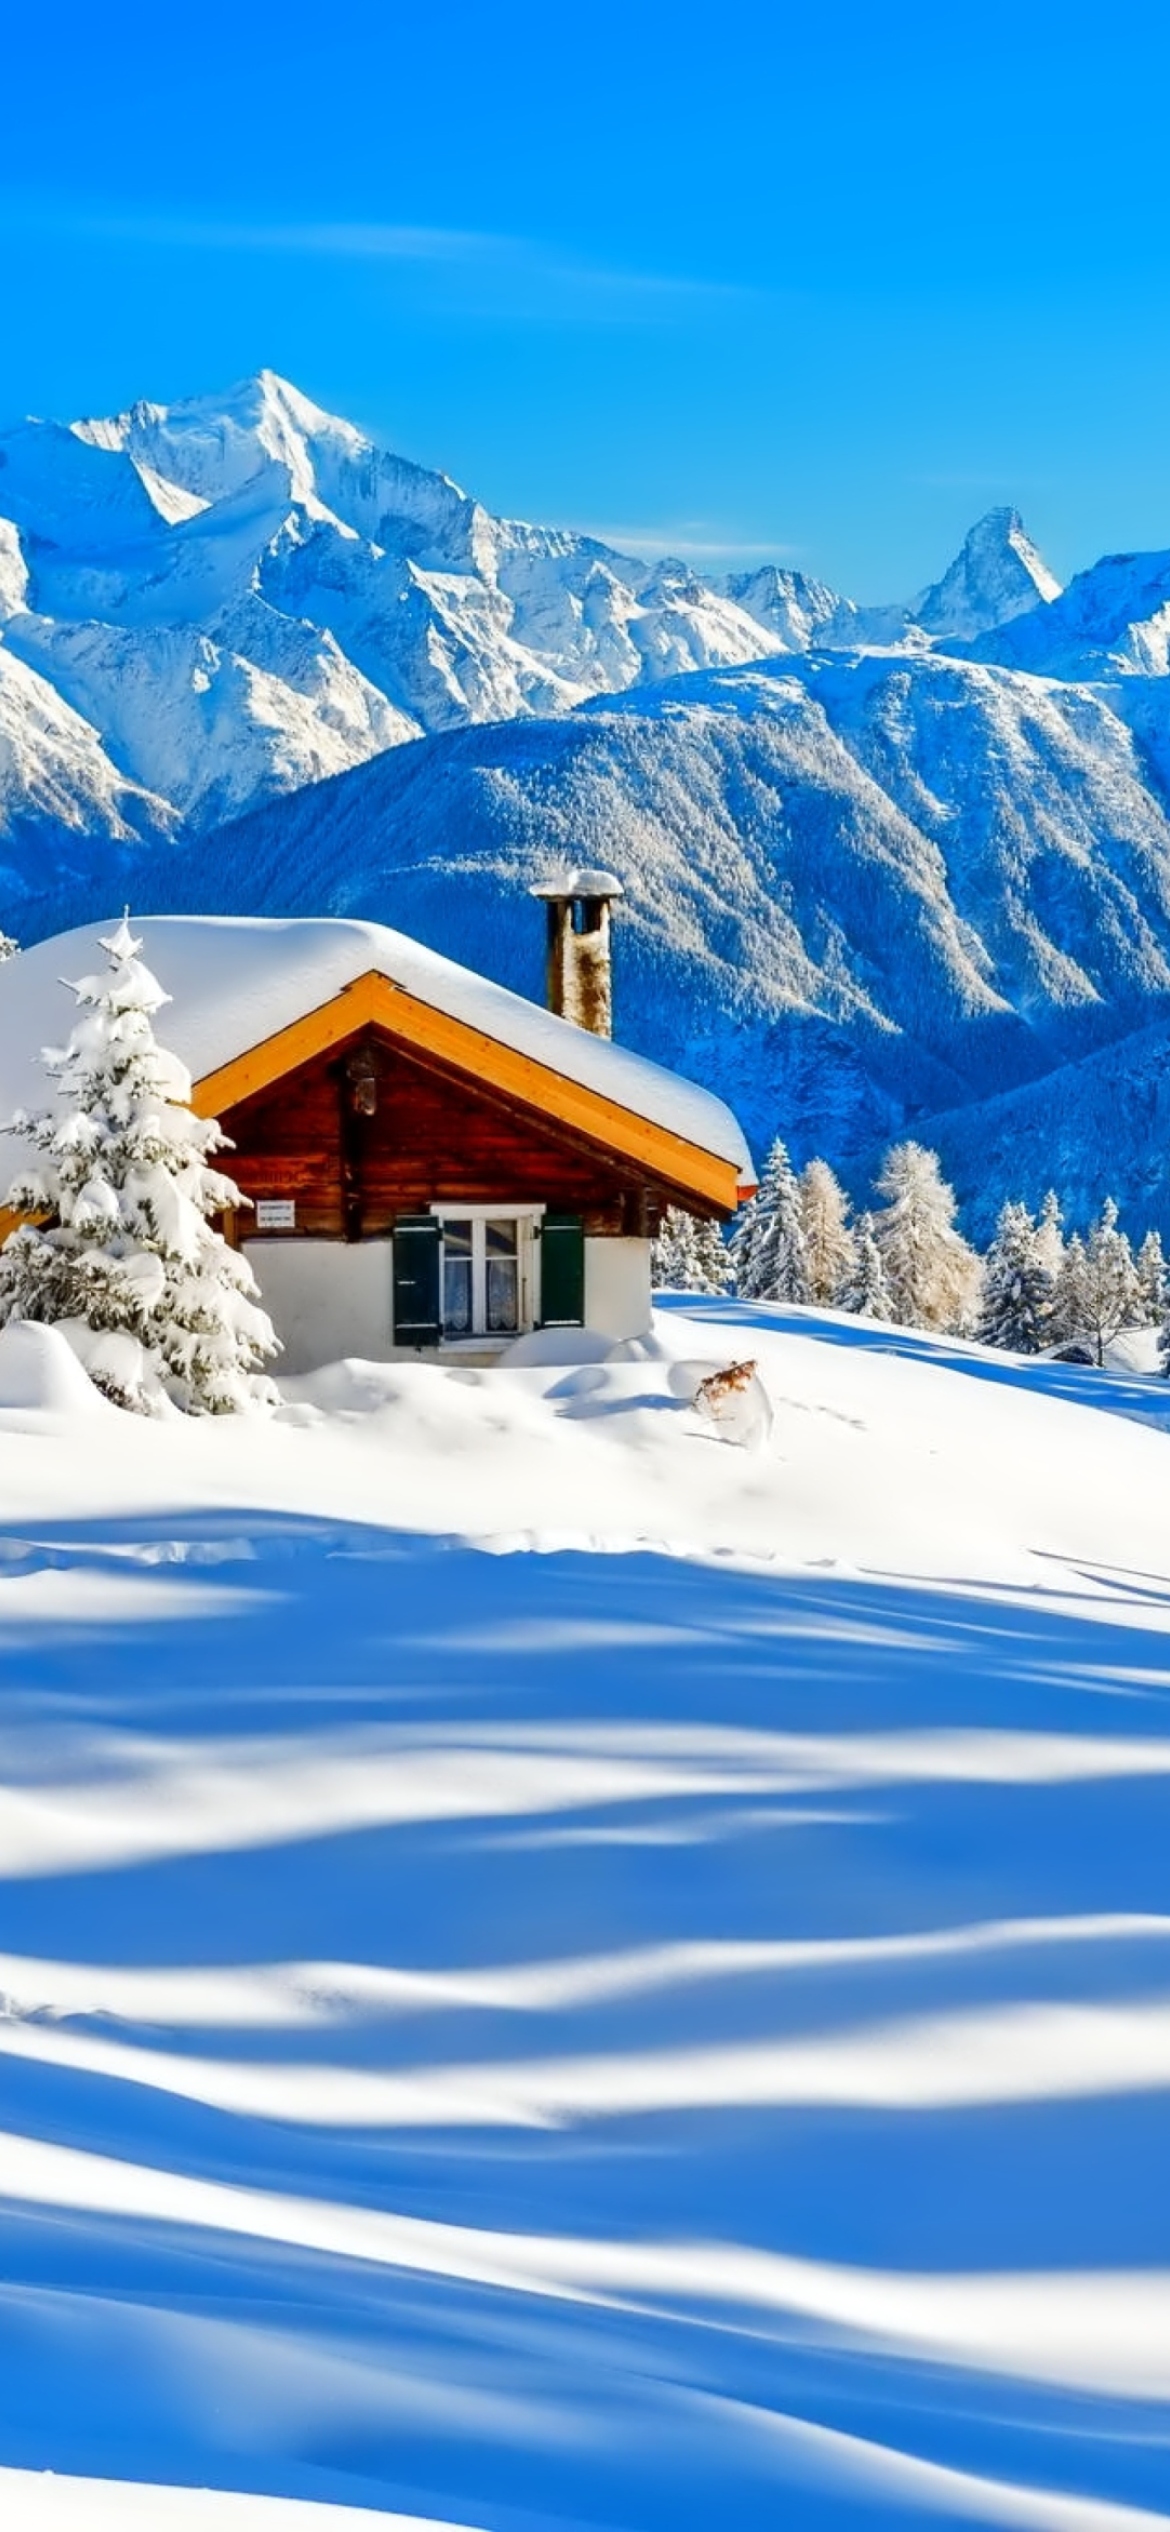 Switzerland Alps in Winter wallpaper 1170x2532